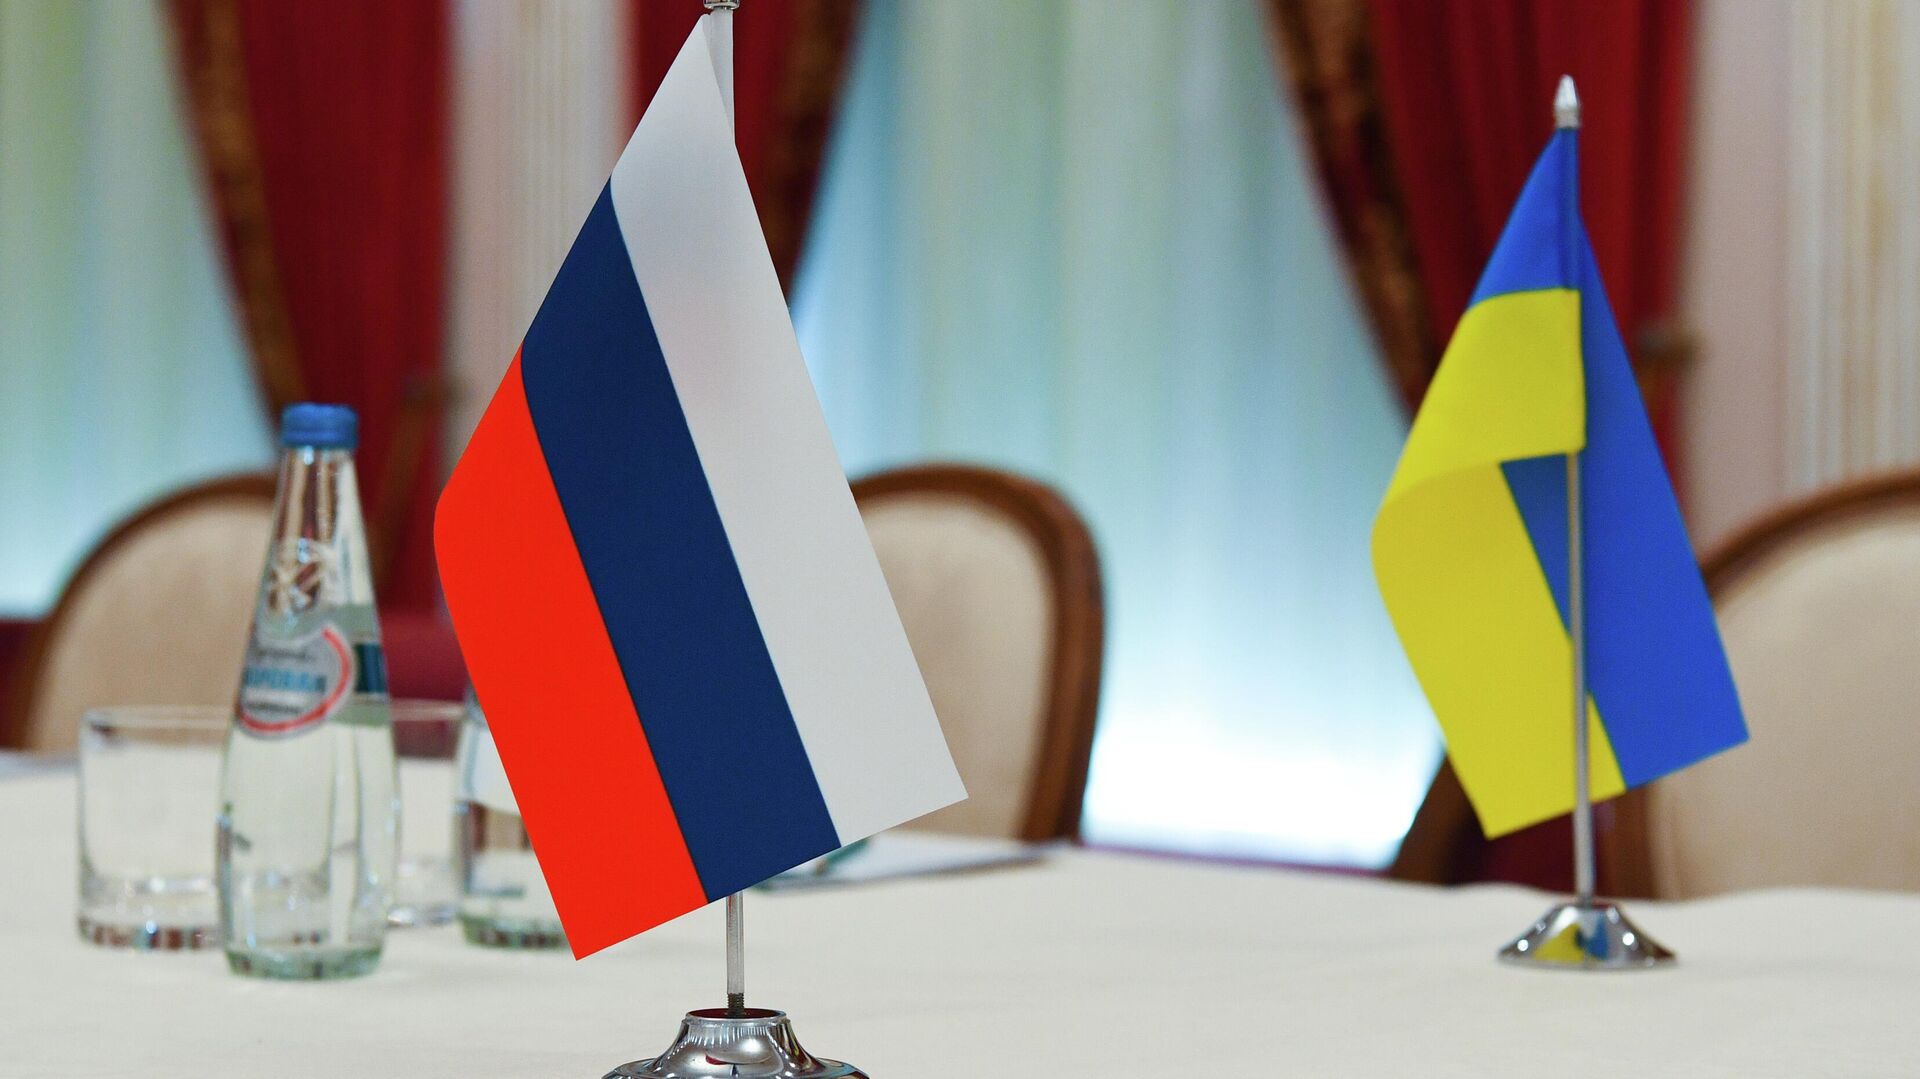 Trận đấu đàm phán Ukraine-Moskva sắp tới hứa hẹn đi đến thành công khi các đội ngũ nguyên thủ quốc gia tiếp tục thảo luận về giải pháp hòa bình cho khu vực. Các nhà ngoại giao đang dốc hết sức để đạt được một thỏa thuận phù hợp cho cả hai bên và đặt nền tảng cho mối quan hệ hữu nghị và cộng tác trong những năm tới.